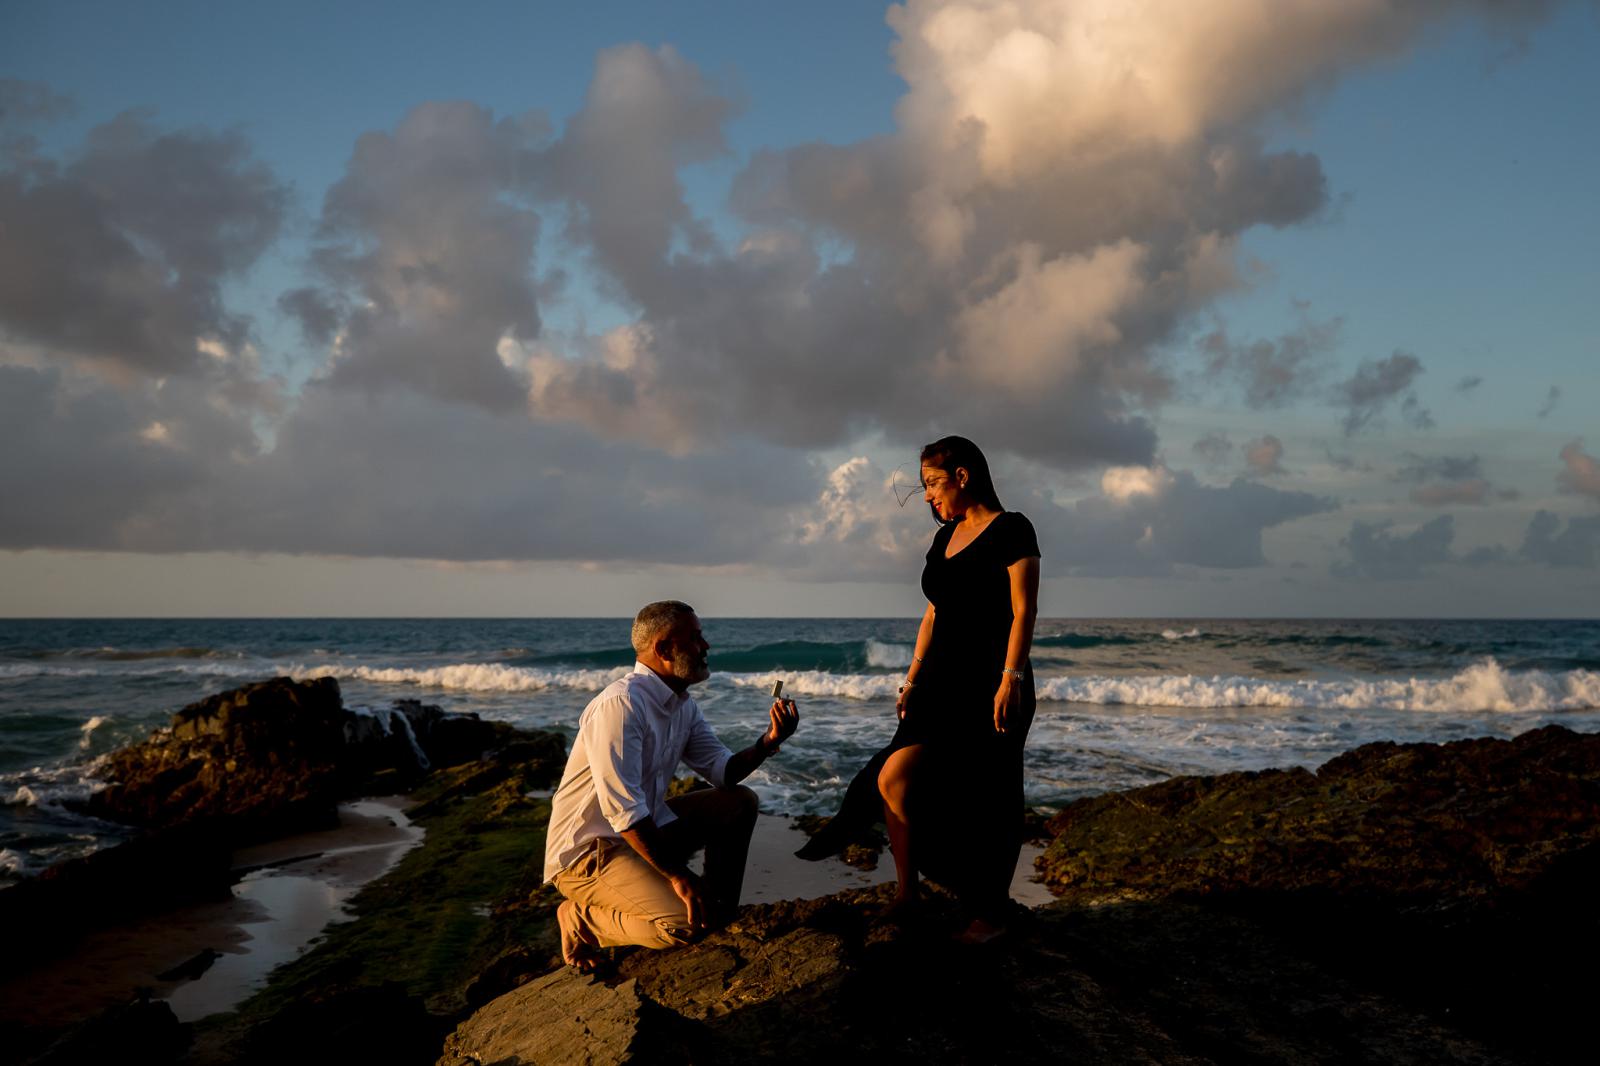 Huwelijksaanzoek in Puerto Rico door bruidsfotograaf Den Haag